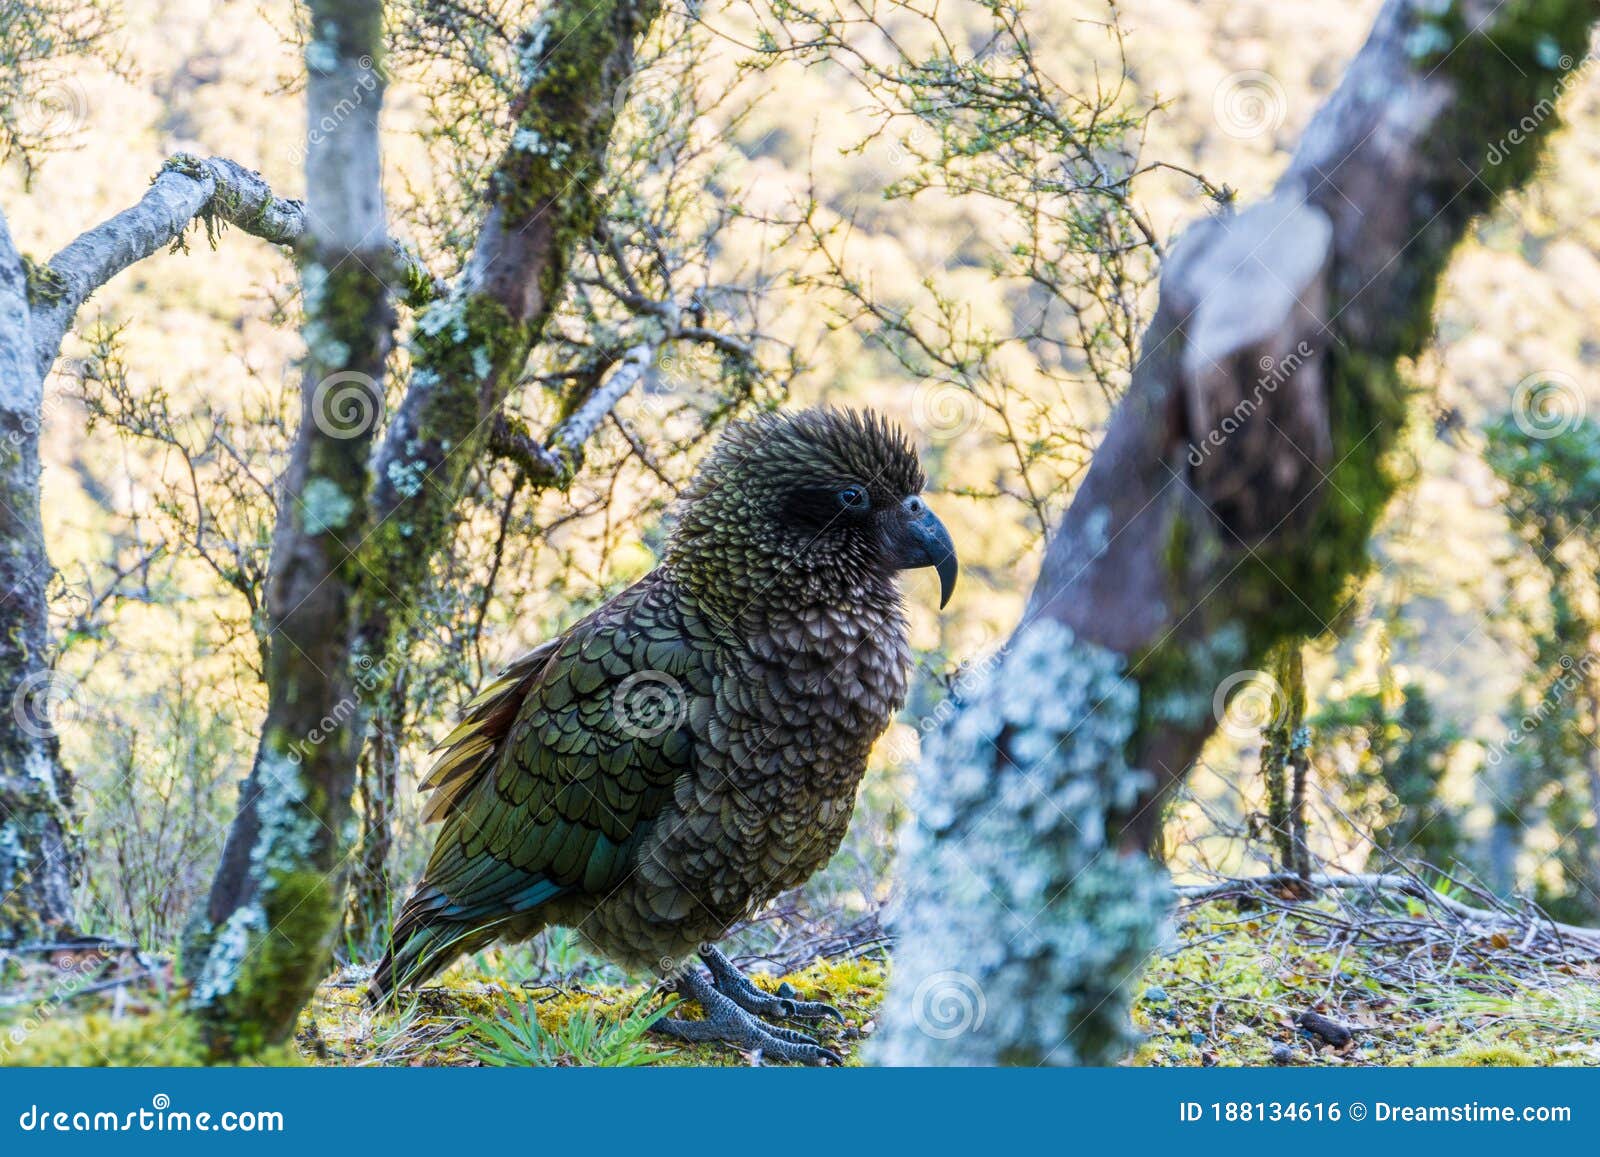 Kea, New Zealand`s Rare Parrot Stock Photo - Image of island, shiny:  188134616